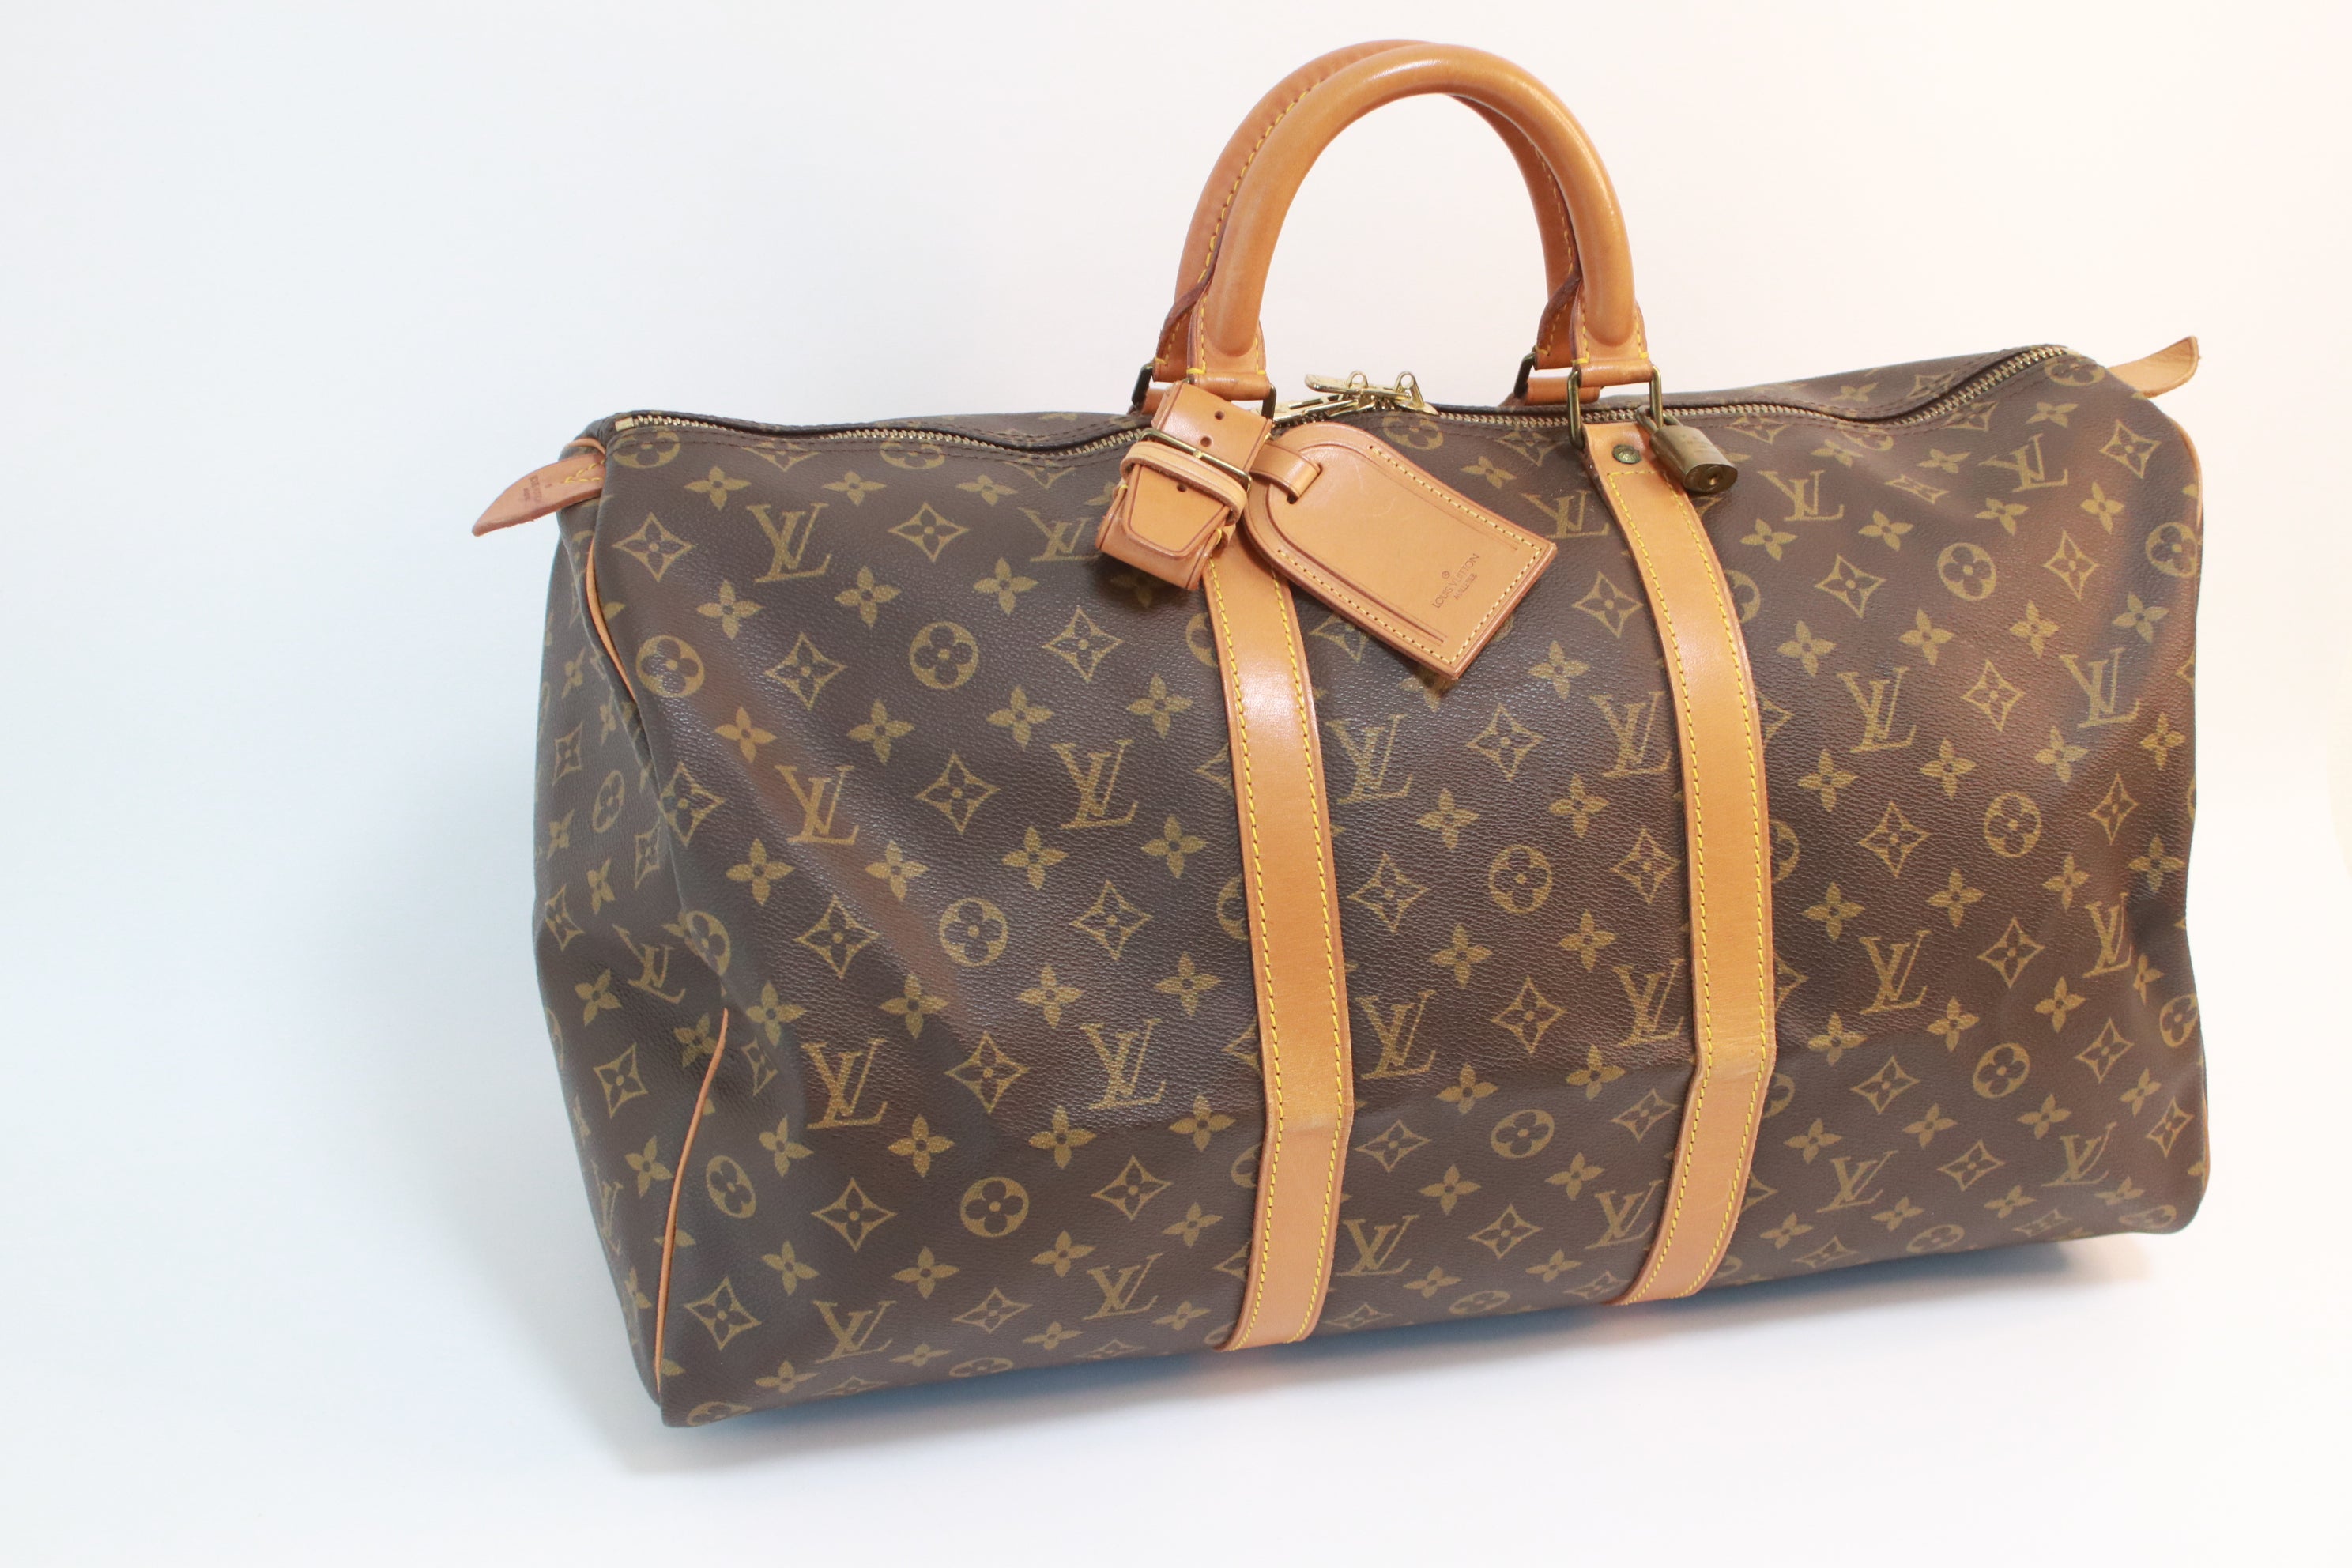 Shop for Louis Vuitton Monogram Canvas Leather Trocadero 30 cm Bag